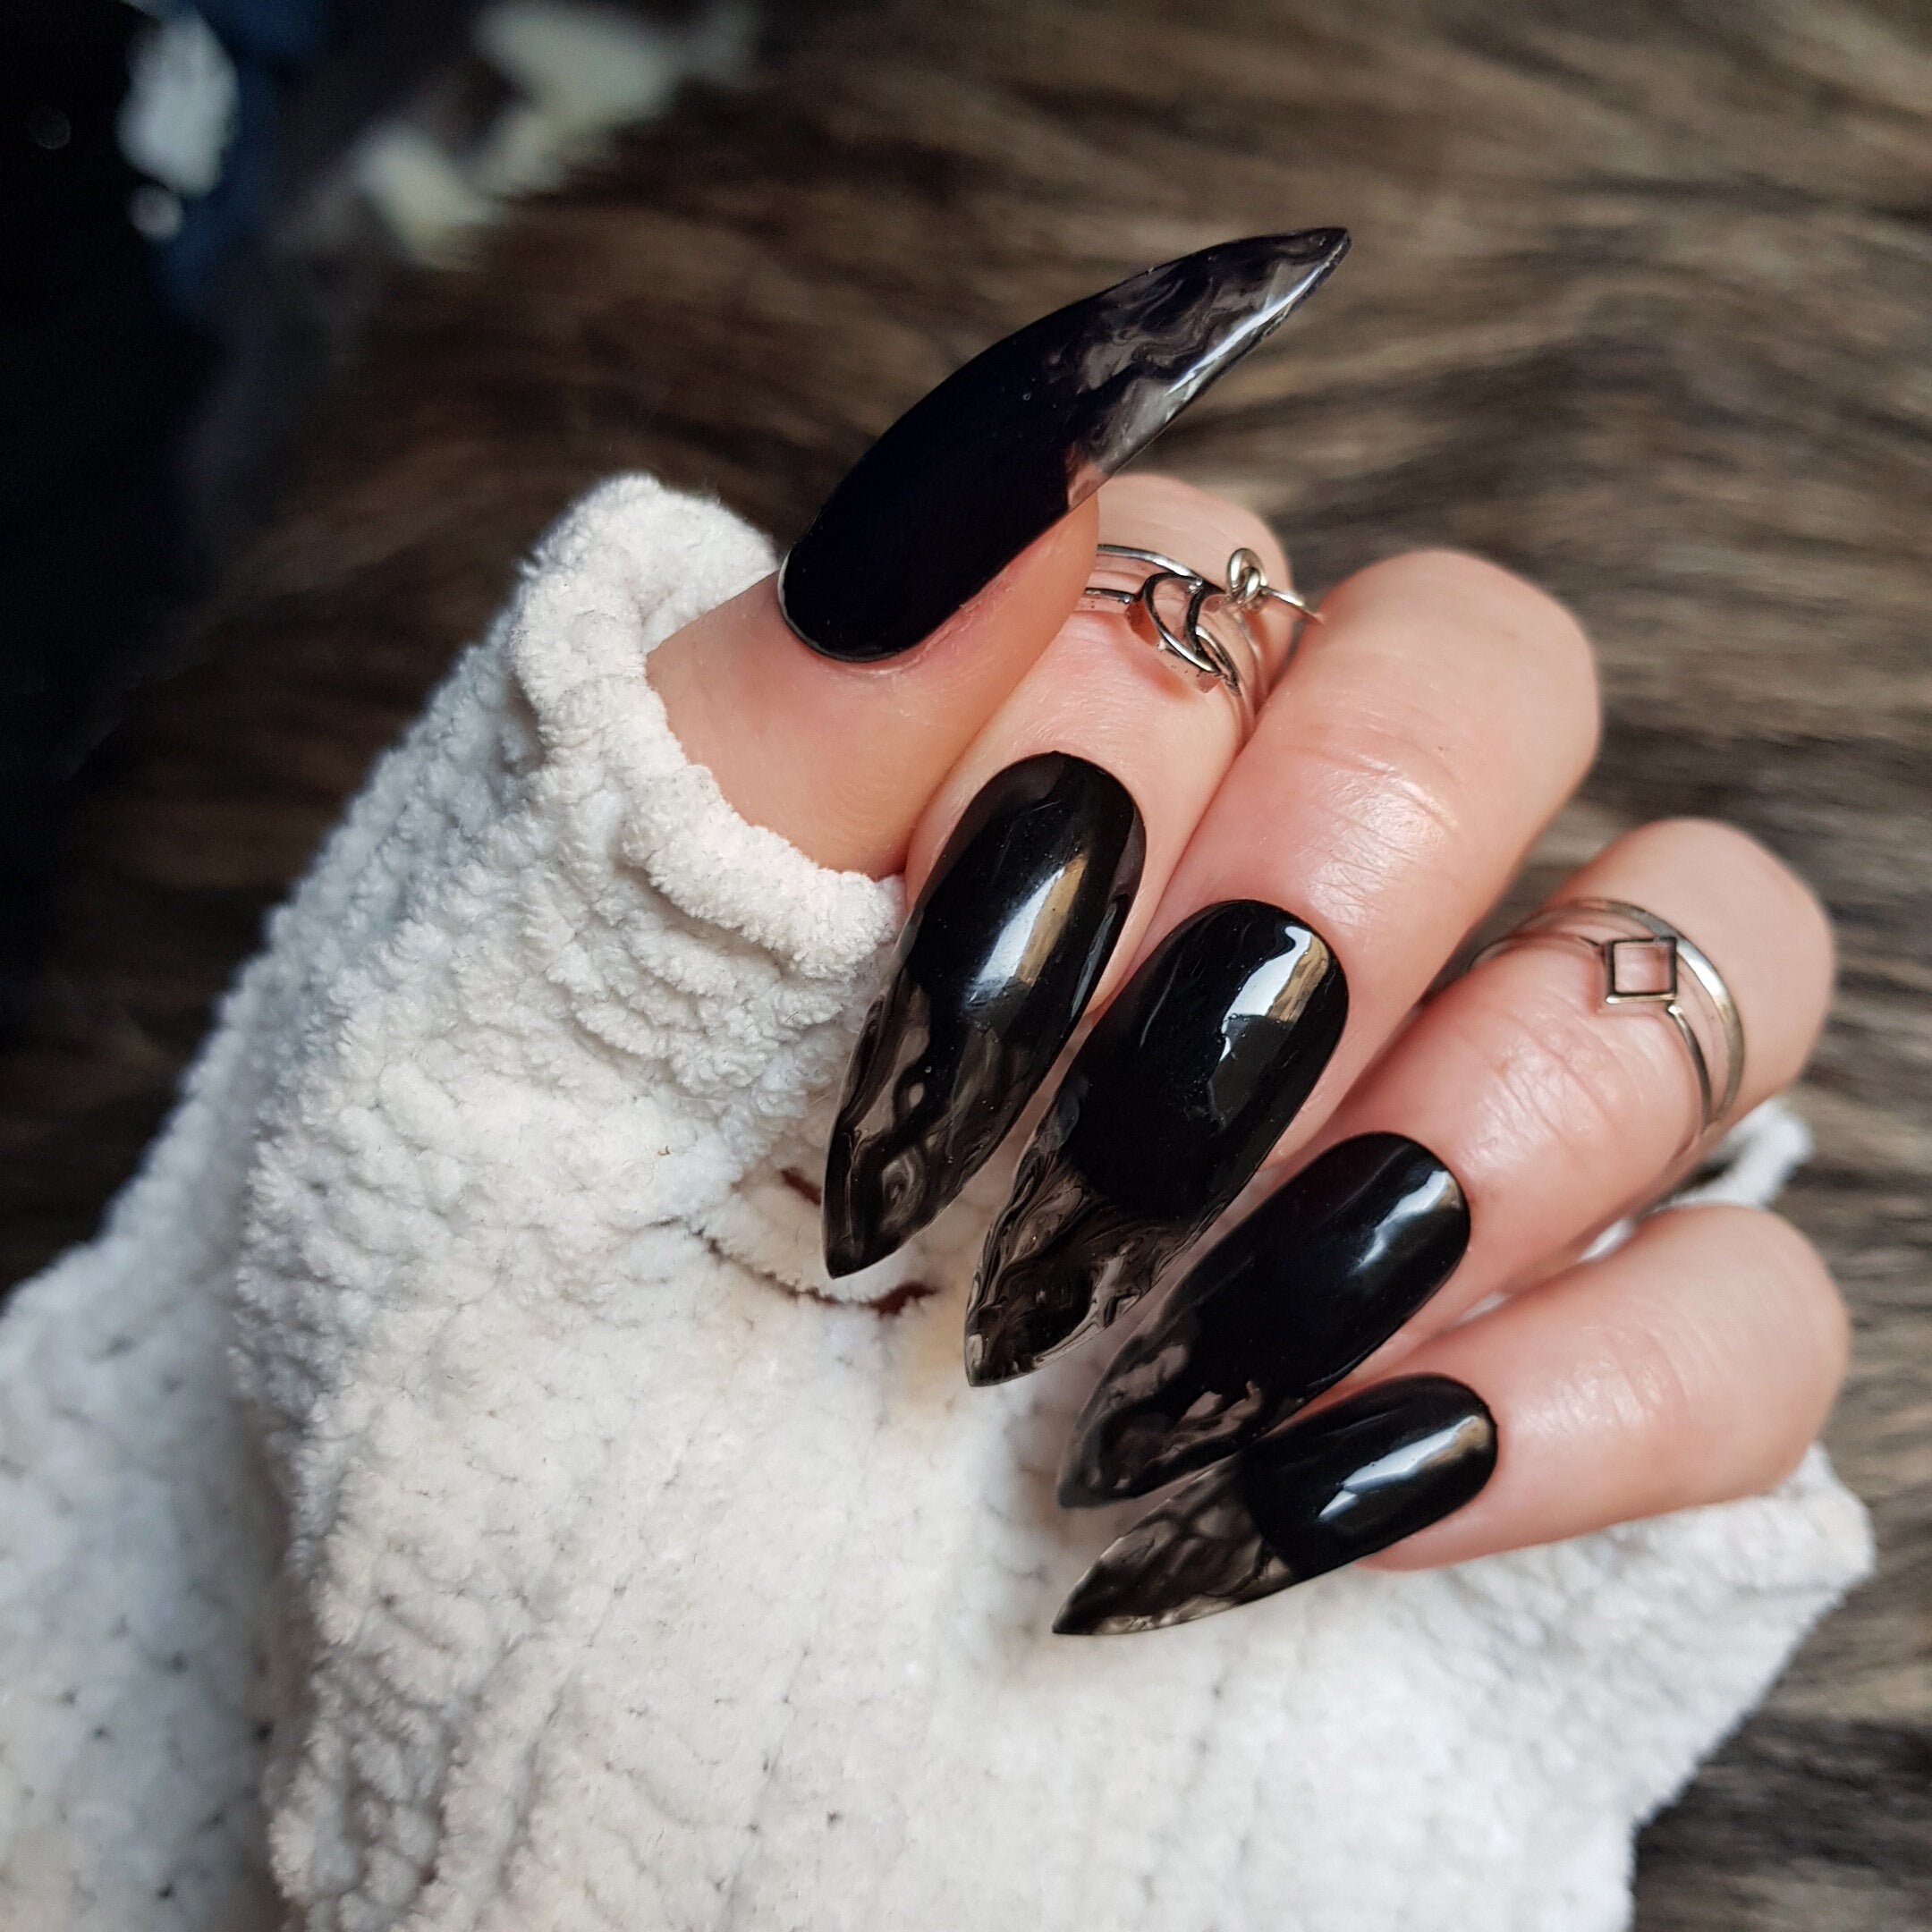 Black smoke press on nail gothic goth black glue on nails | Etsy